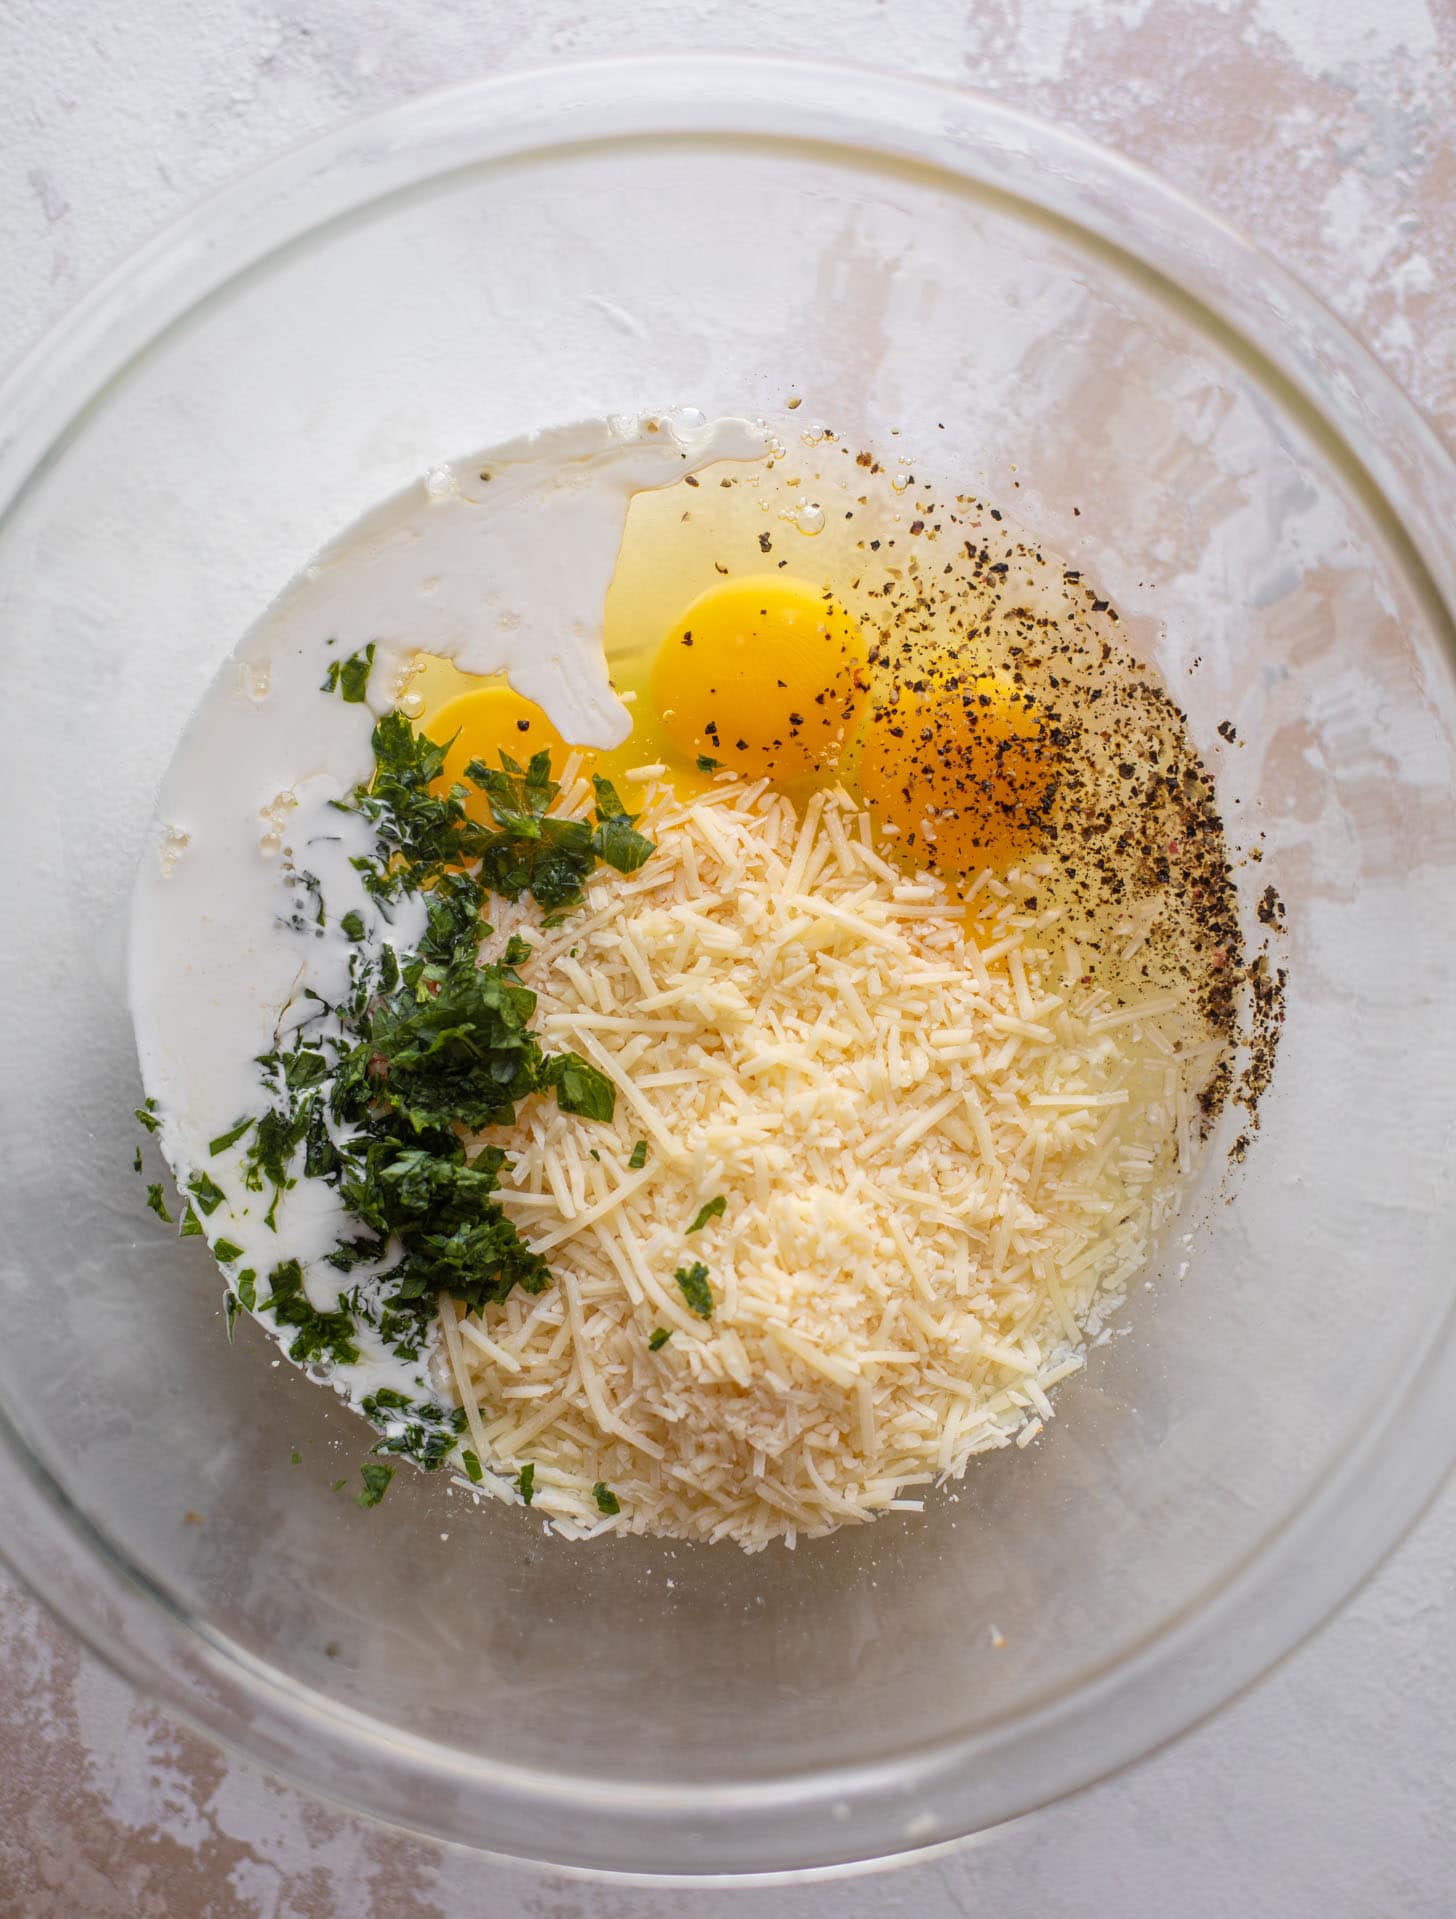 eggs, parmesan, herbs, cream in a bowl